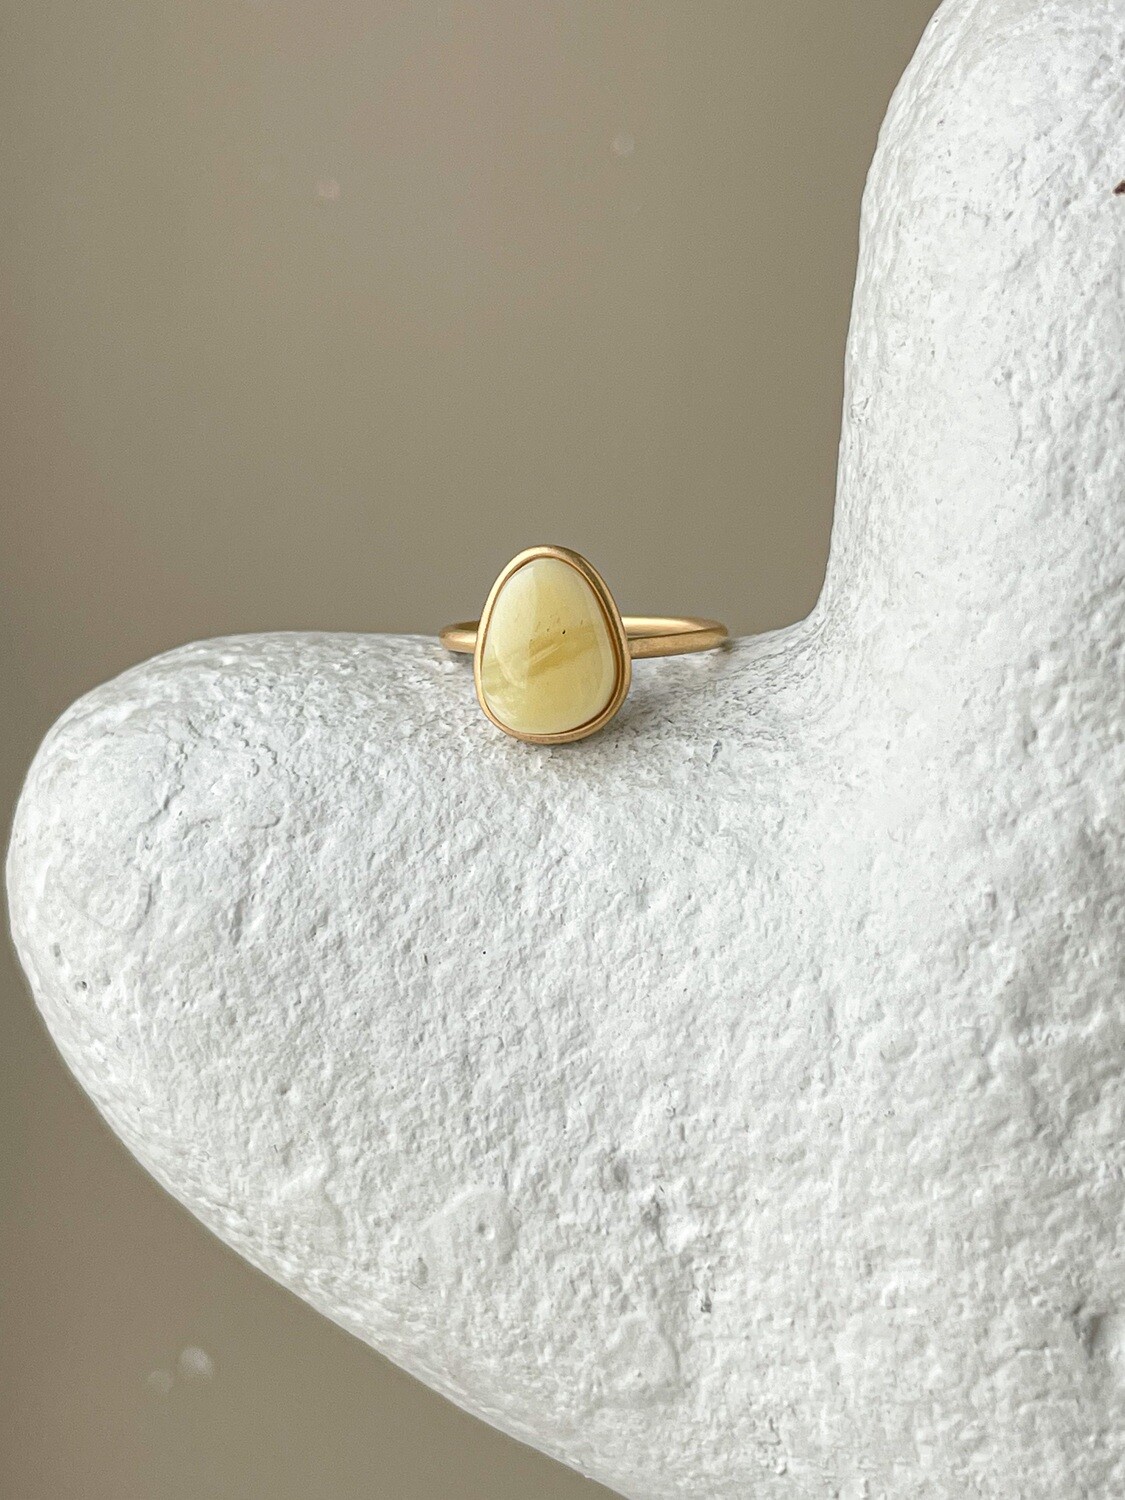 Тонкое кольцо с медовым янтарем, размер 16,5